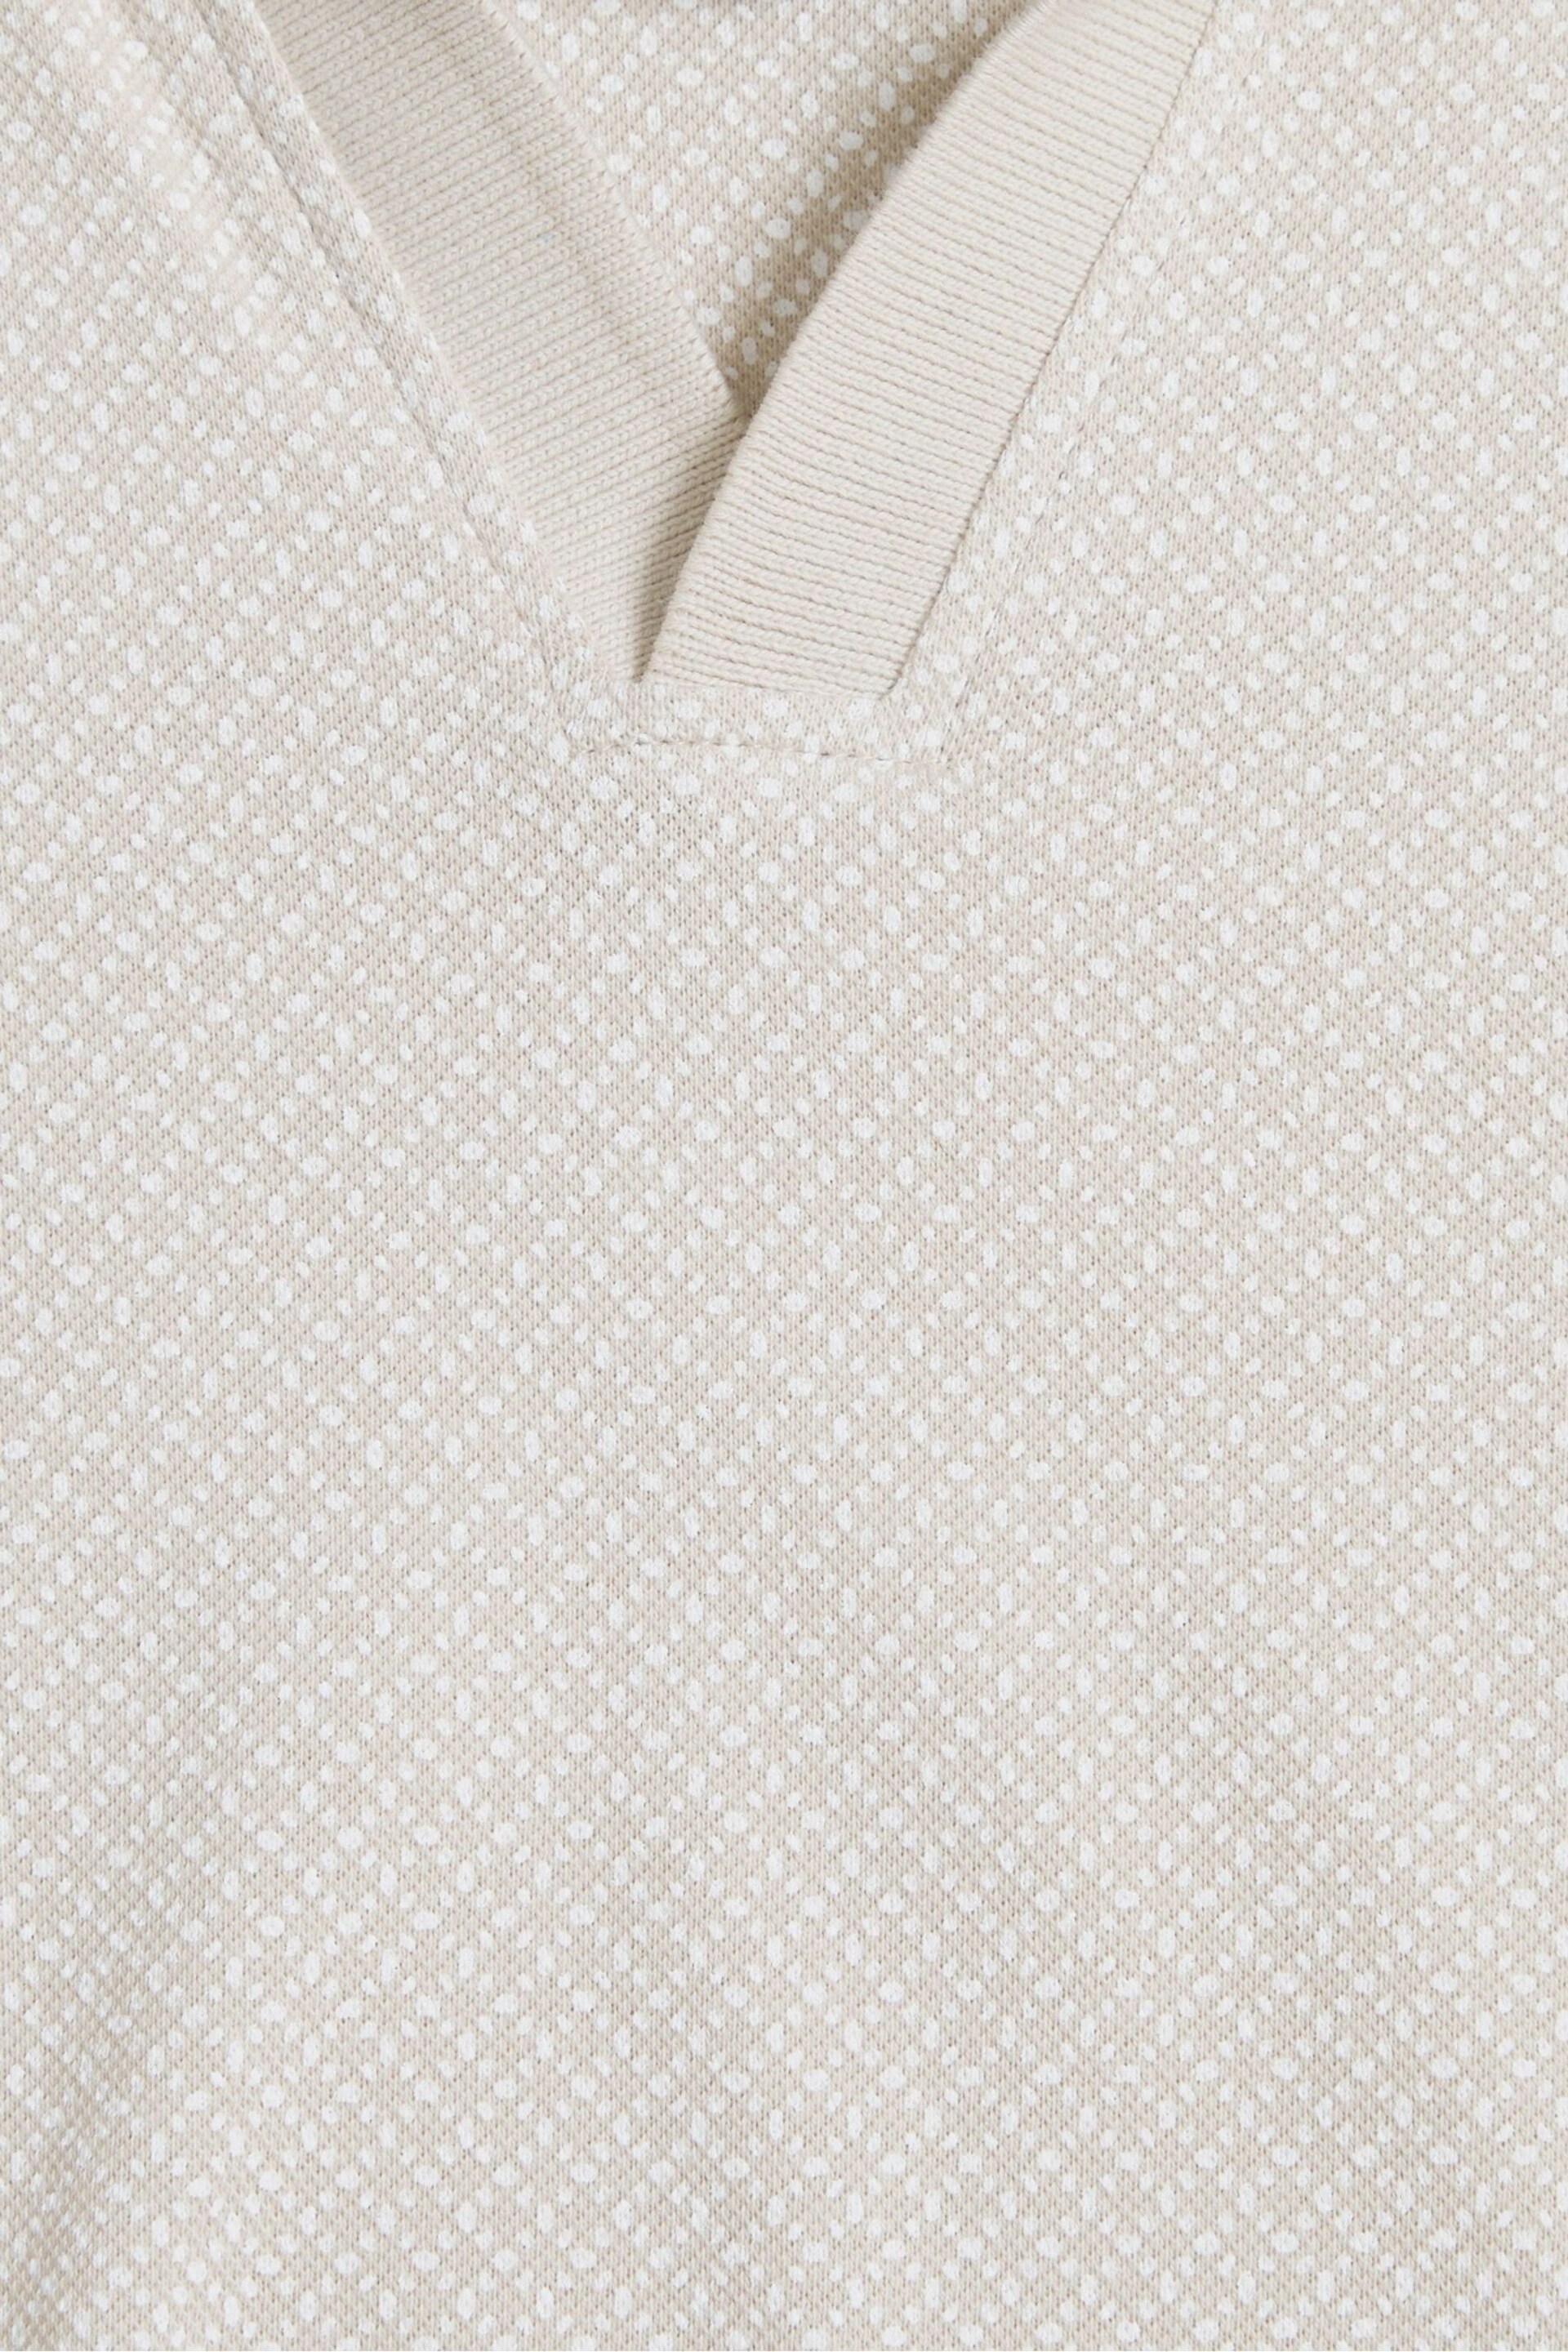 Threadbare Ecru Open Collar Pique Polo Shirt - Image 5 of 5